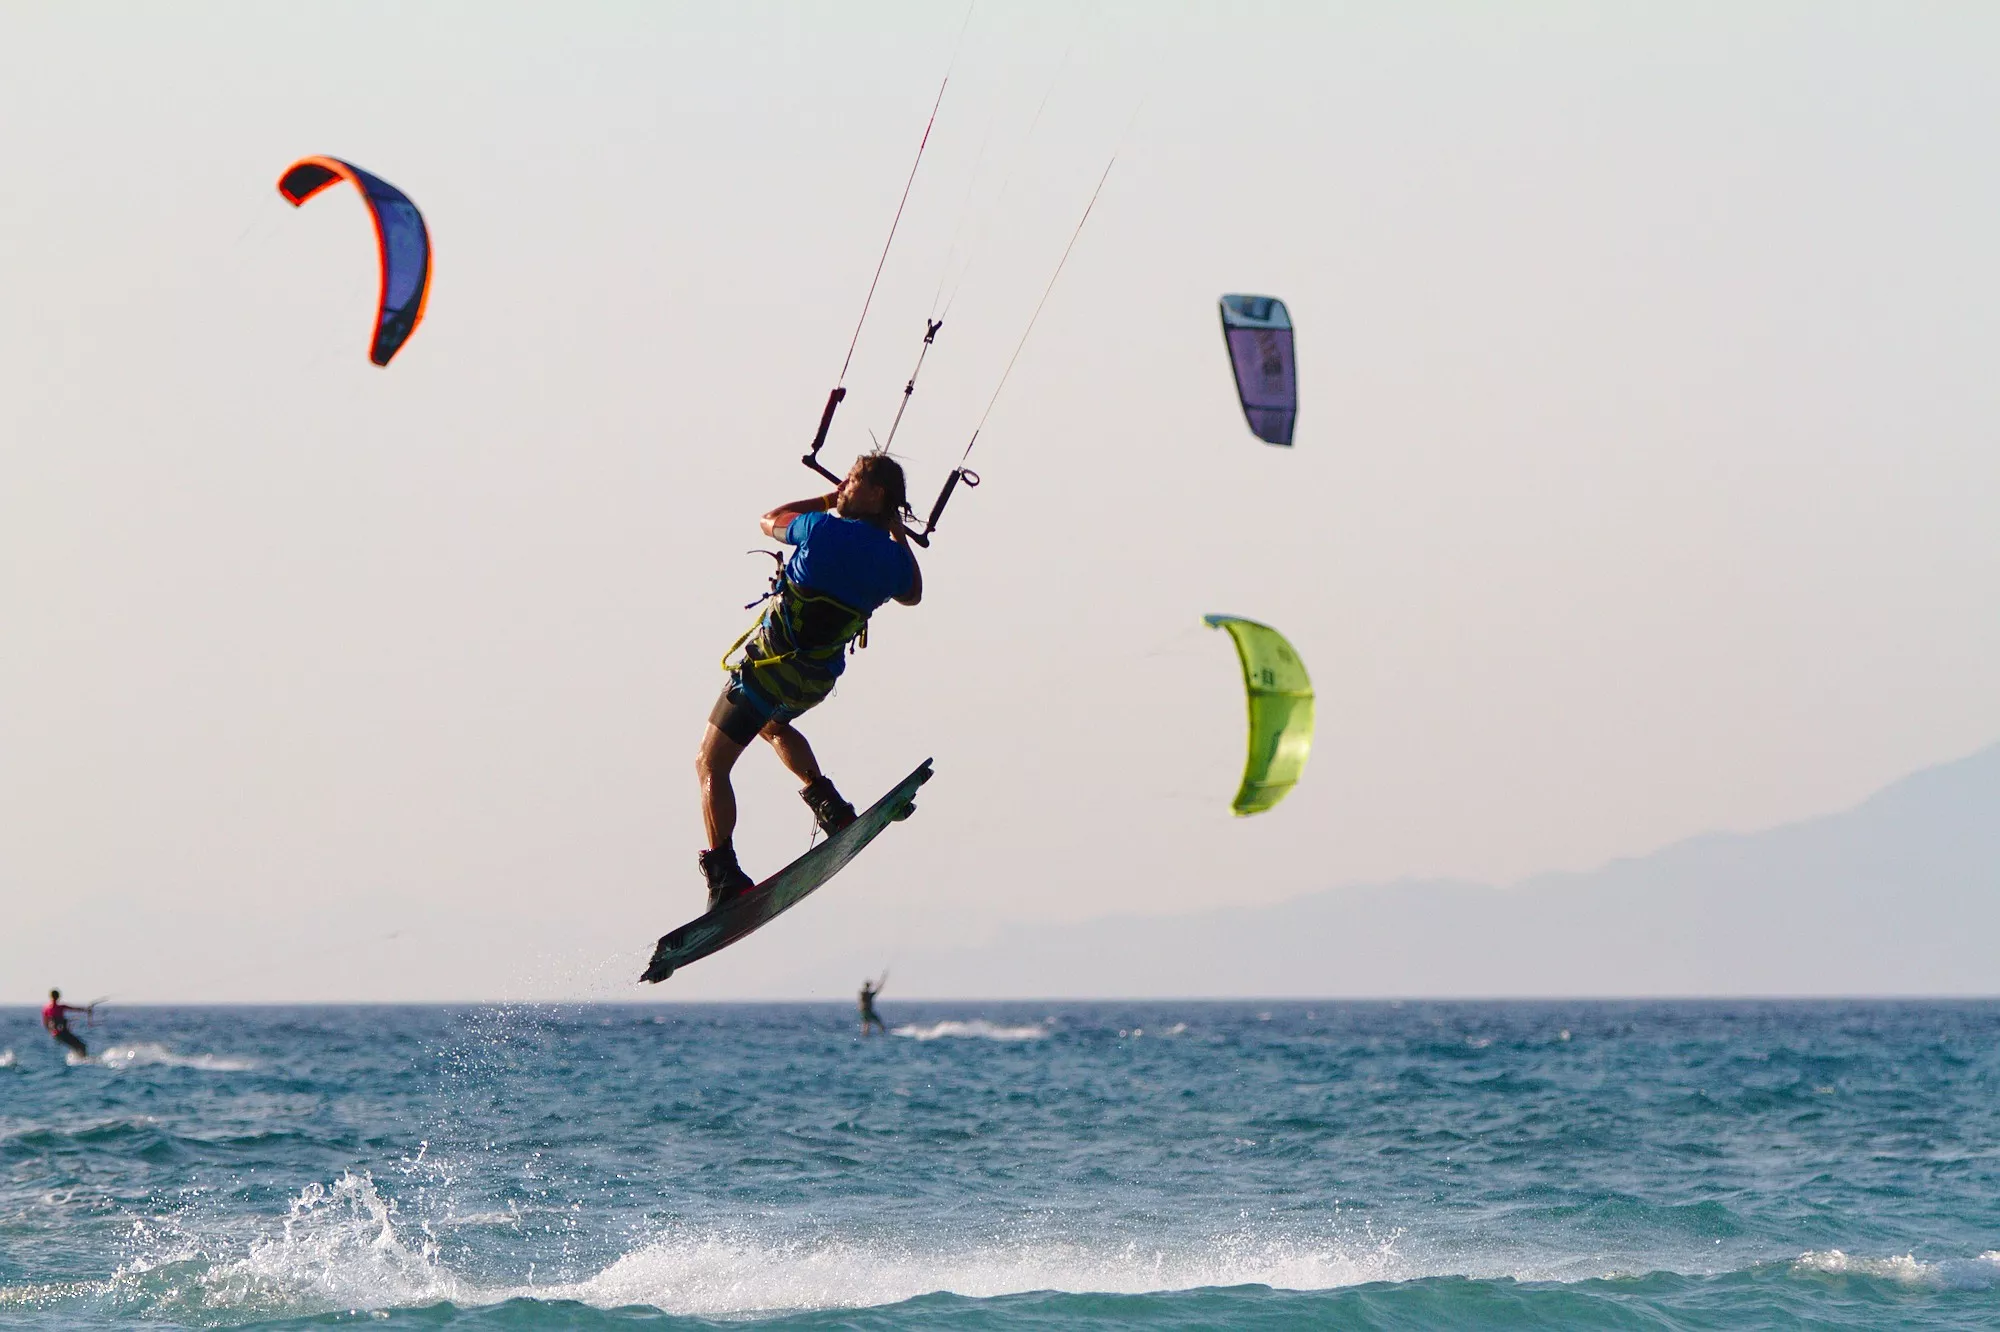 Thalaseasports Naxos in Greece, Europe | Kitesurfing - Rated 1.7